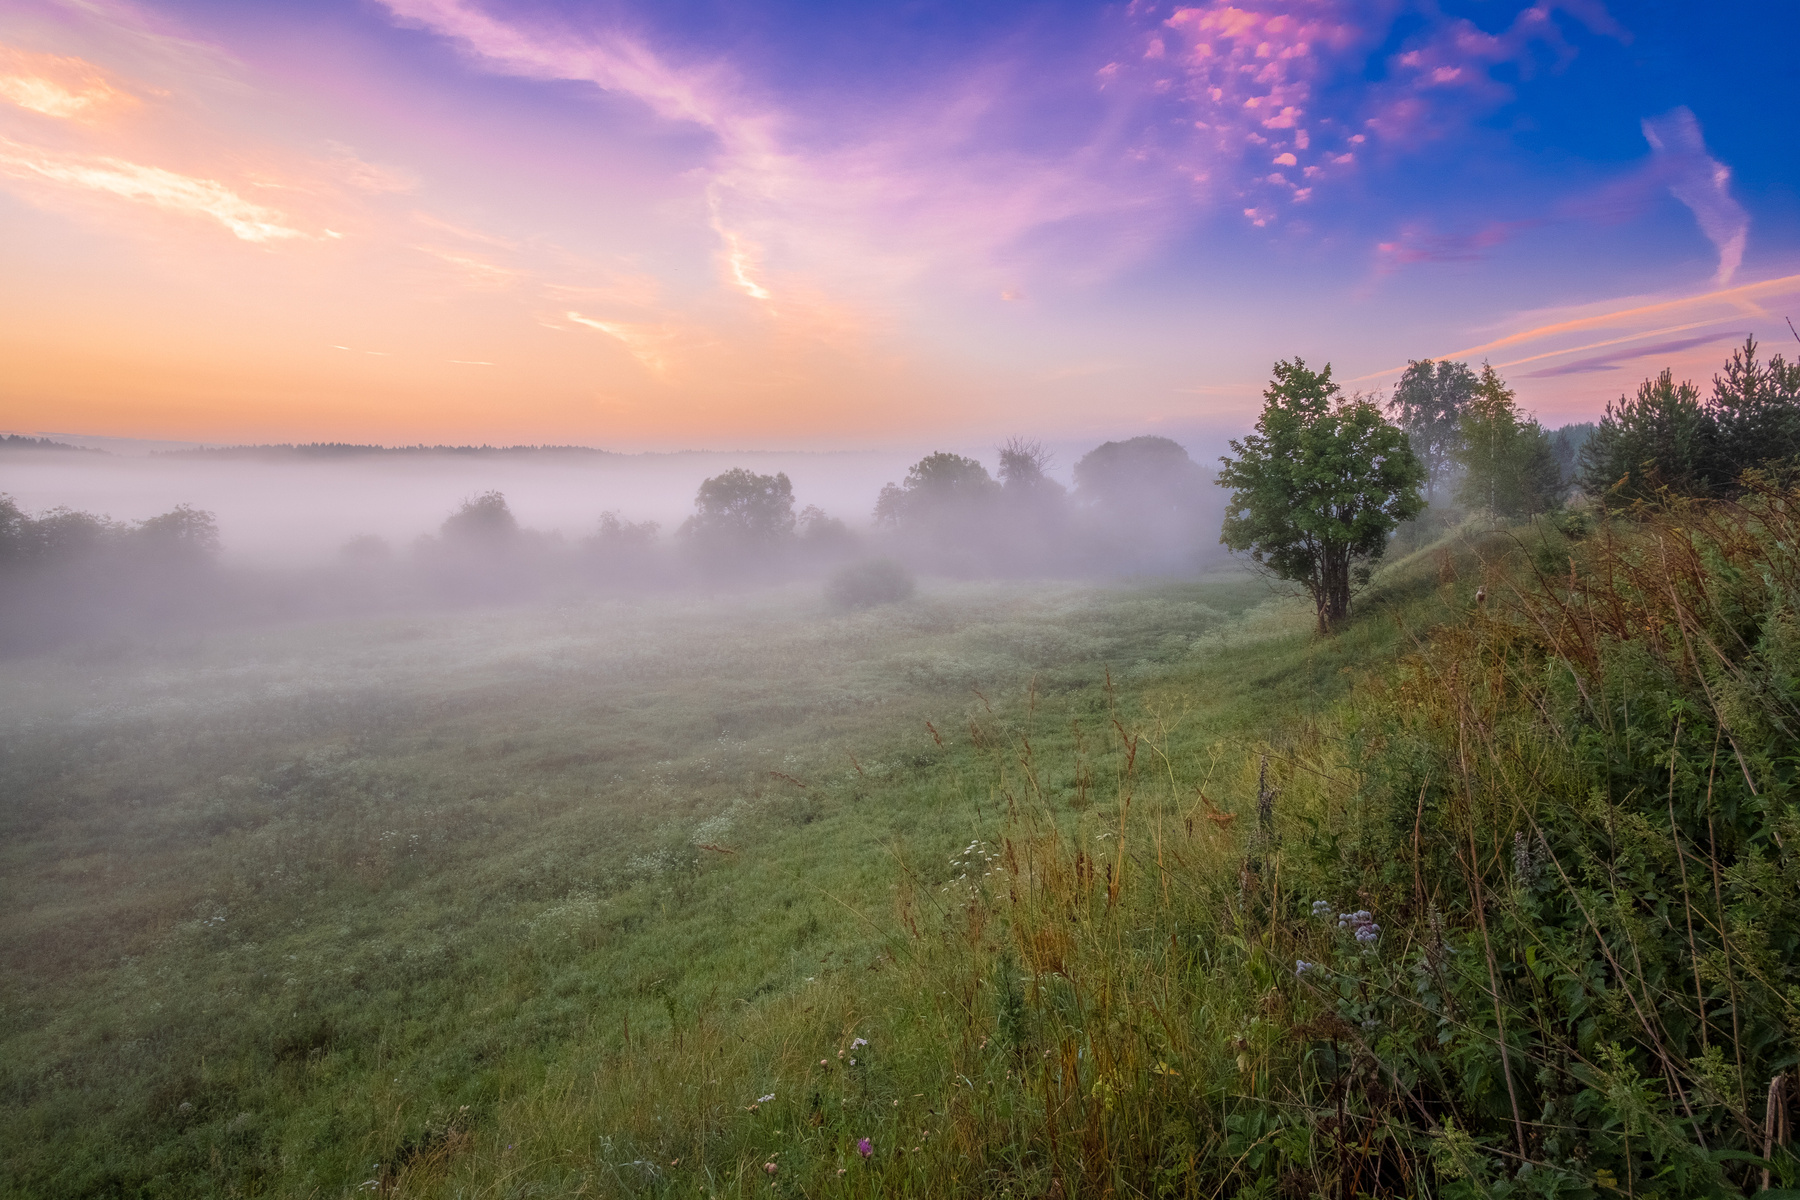 Туман ползёт рассеиваясь дымкой, ложась росой на сонную траву... утро рассвет туман небо краски прохлада ночь пейзаж поле дерево